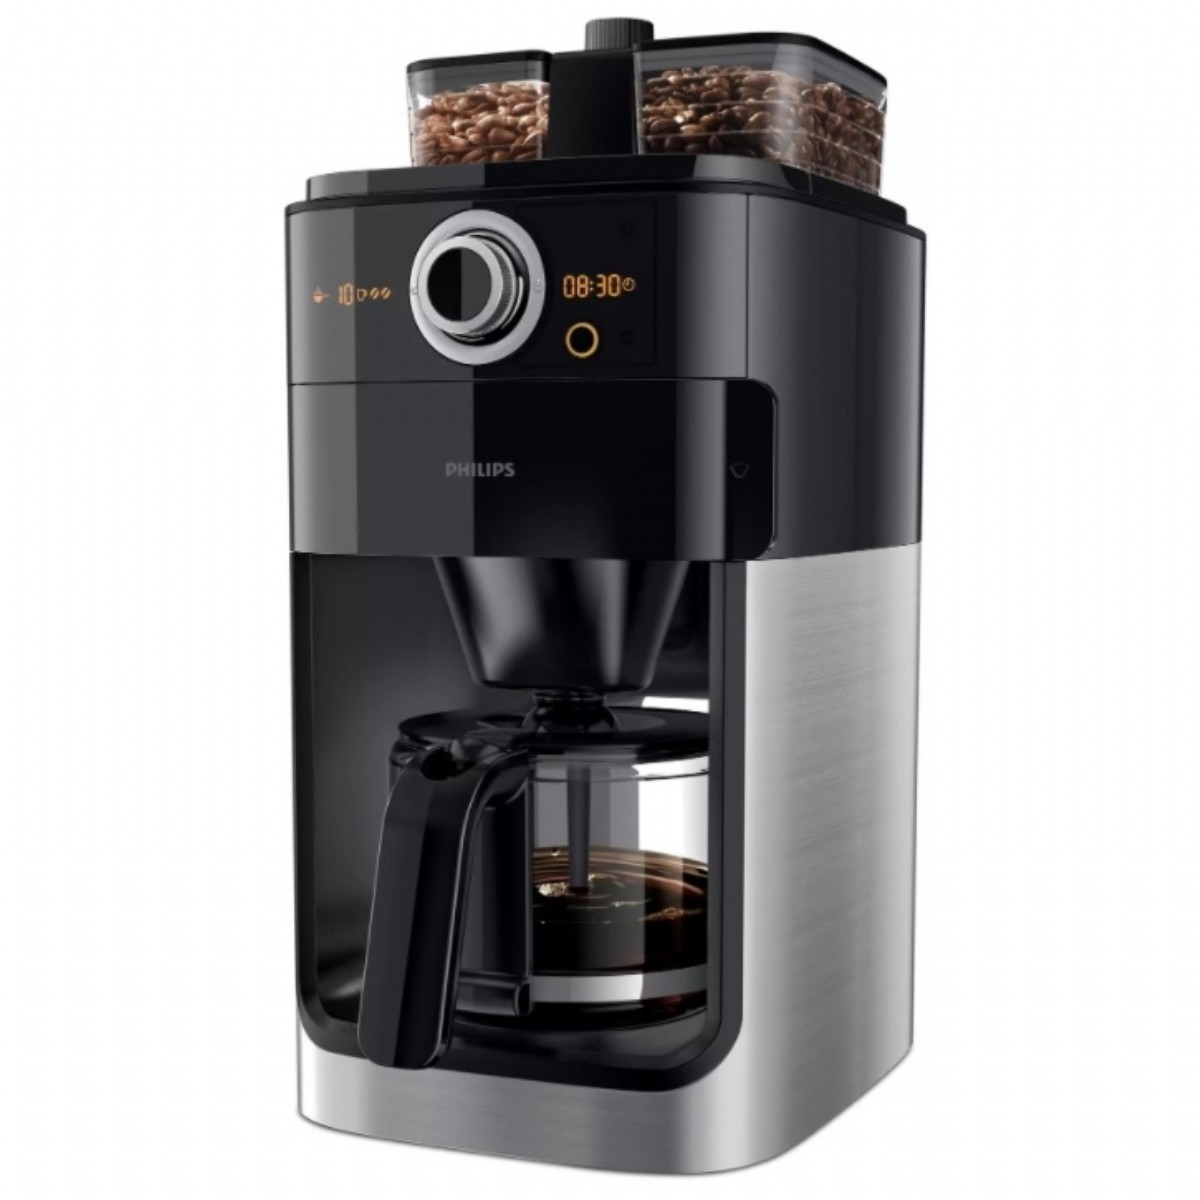 Filtre Kahve Makinesi | Philips HD7769/00 Öğütücülü Filtre Kahve Makinesi | HD7769/00 | HD7769/00, philips filtre kahve makinesi, filtre kahve, Philips HD7769/00 Öğütücülü Filtre Kahve Makinesi | 